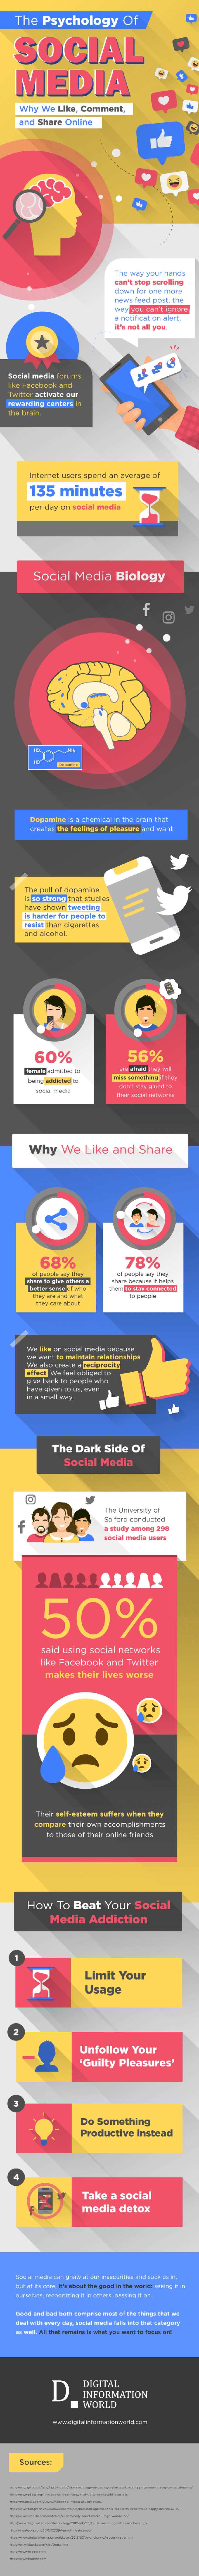 Psychology behind Social Media (Source: https://www.der-bank-blog.de/)